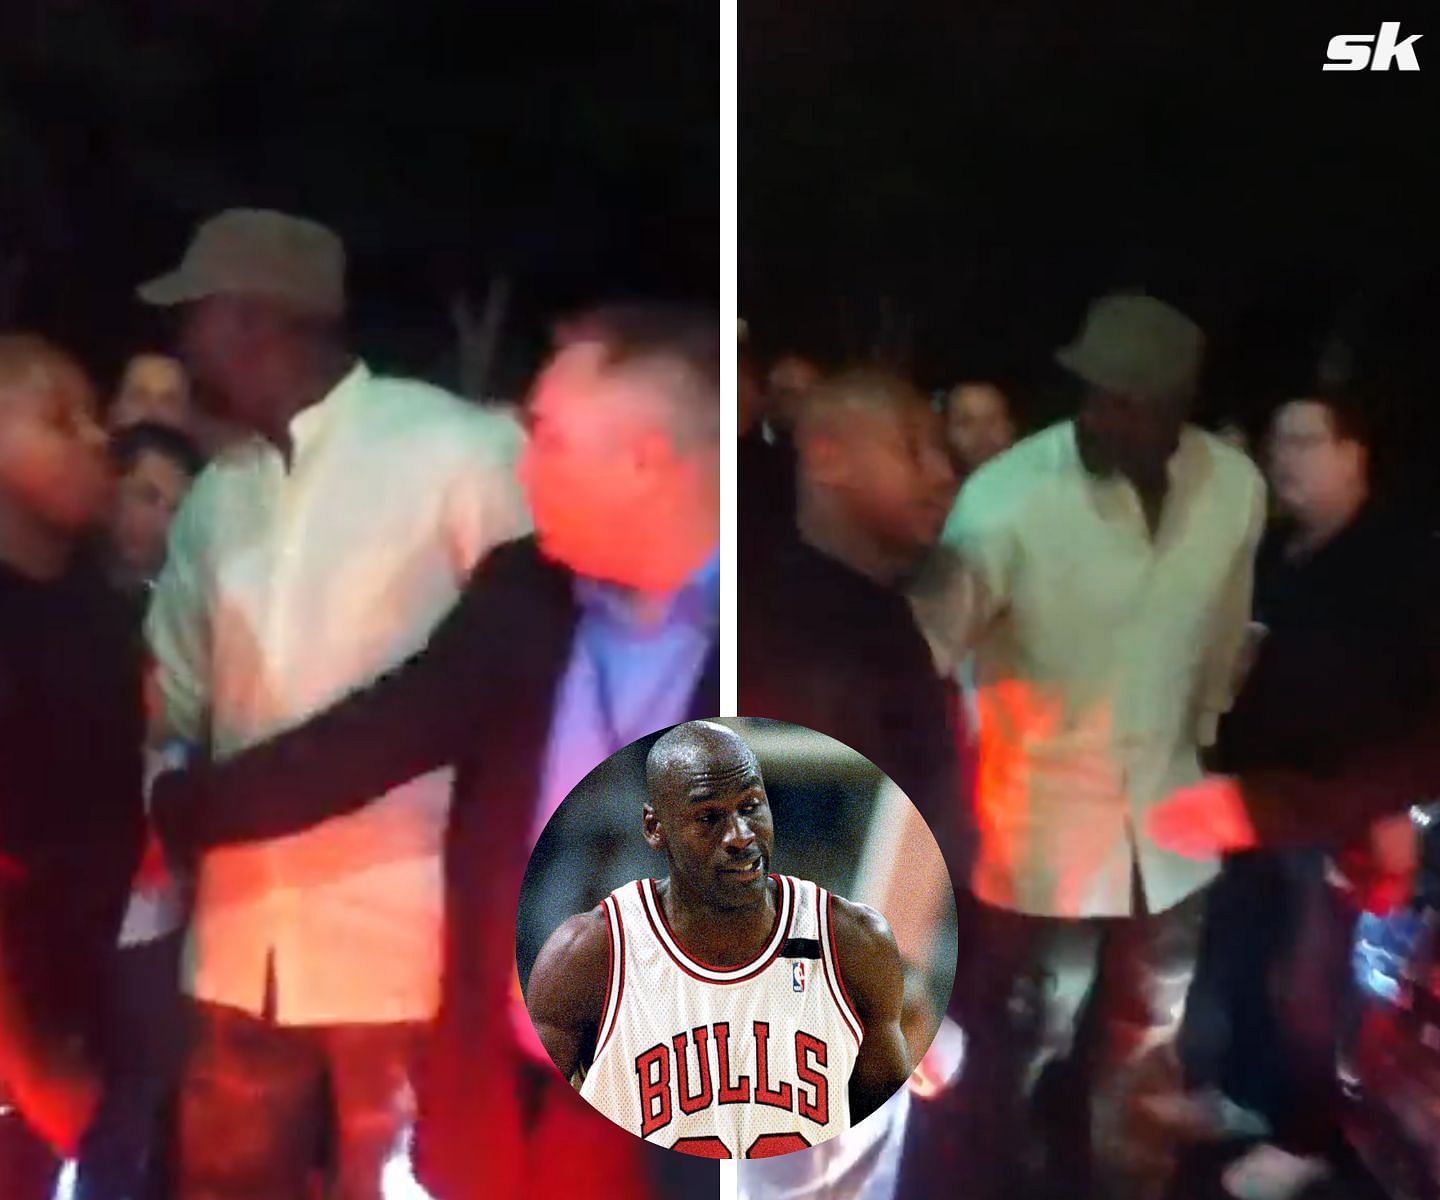 Michael Jordan breaking up a fight between two celebrities